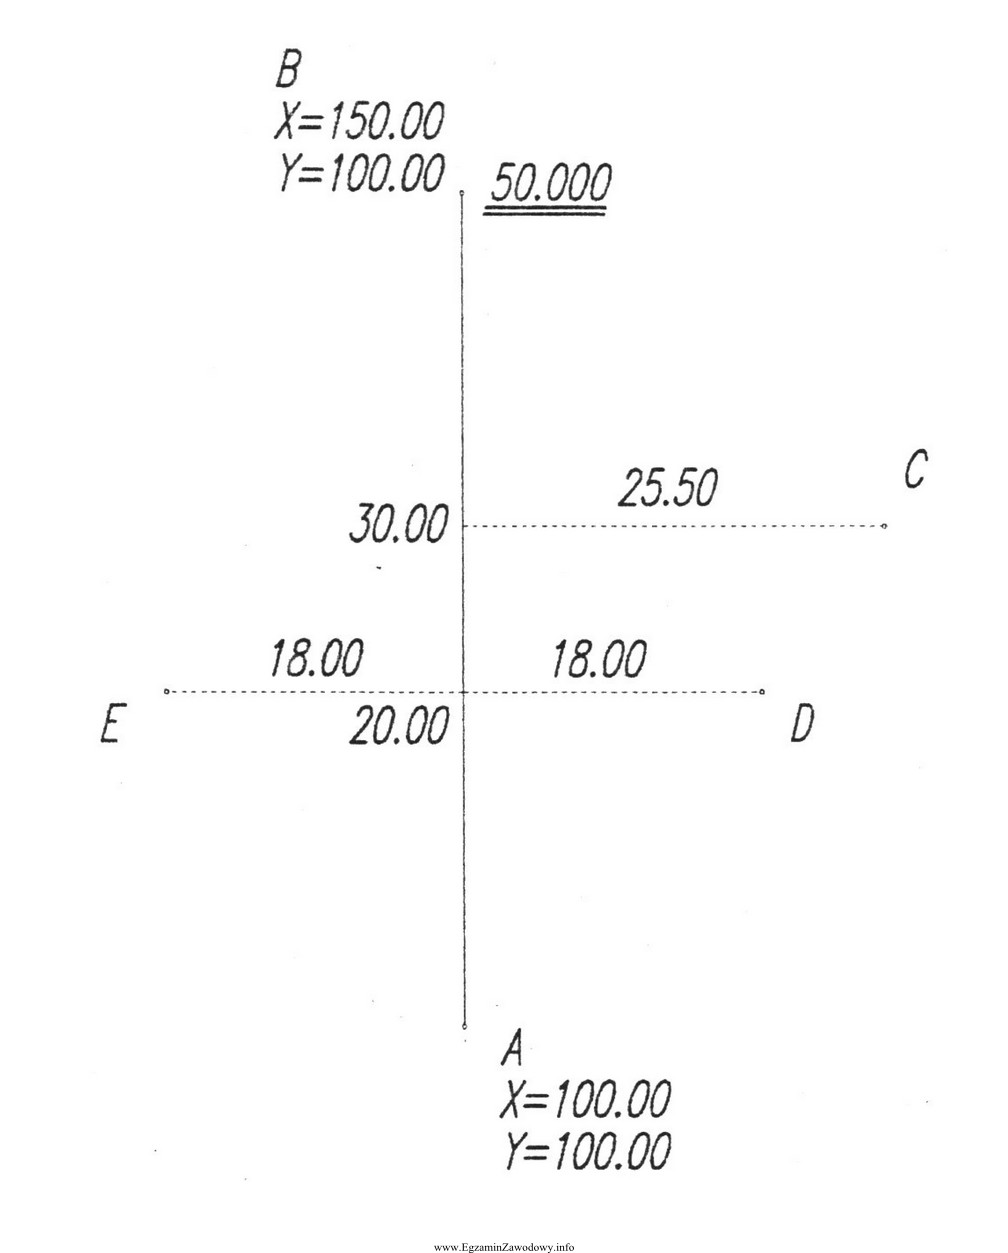 Określ współrzędne (X, Y) punktu E 